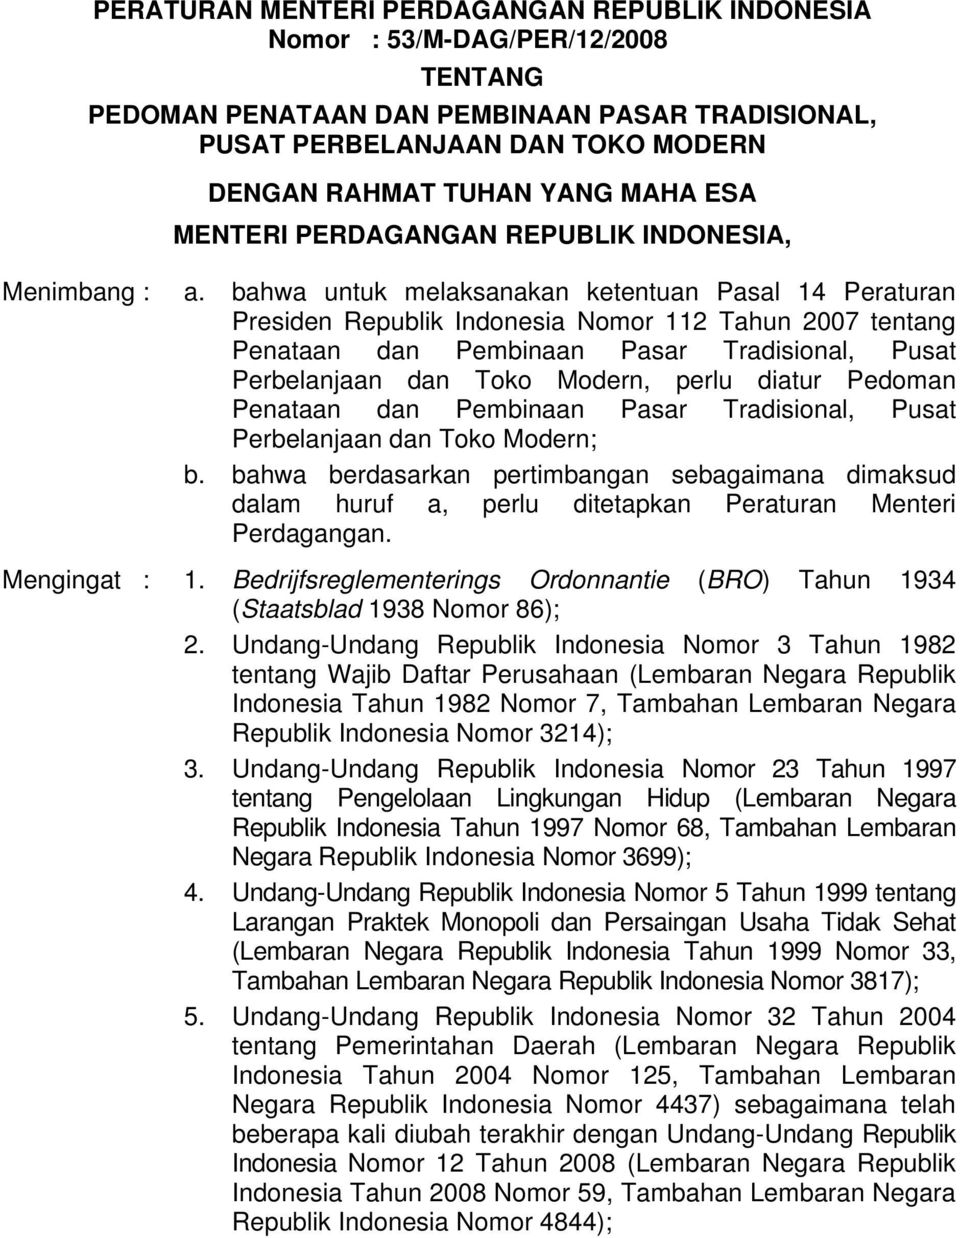 bahwa untuk melaksanakan ketentuan Pasal 14 Peraturan Presiden Republik Indonesia Nomor 112 Tahun 2007 tentang Penataan dan Pembinaan Pasar Tradisional, Pusat Perbelanjaan dan Toko Modern, perlu